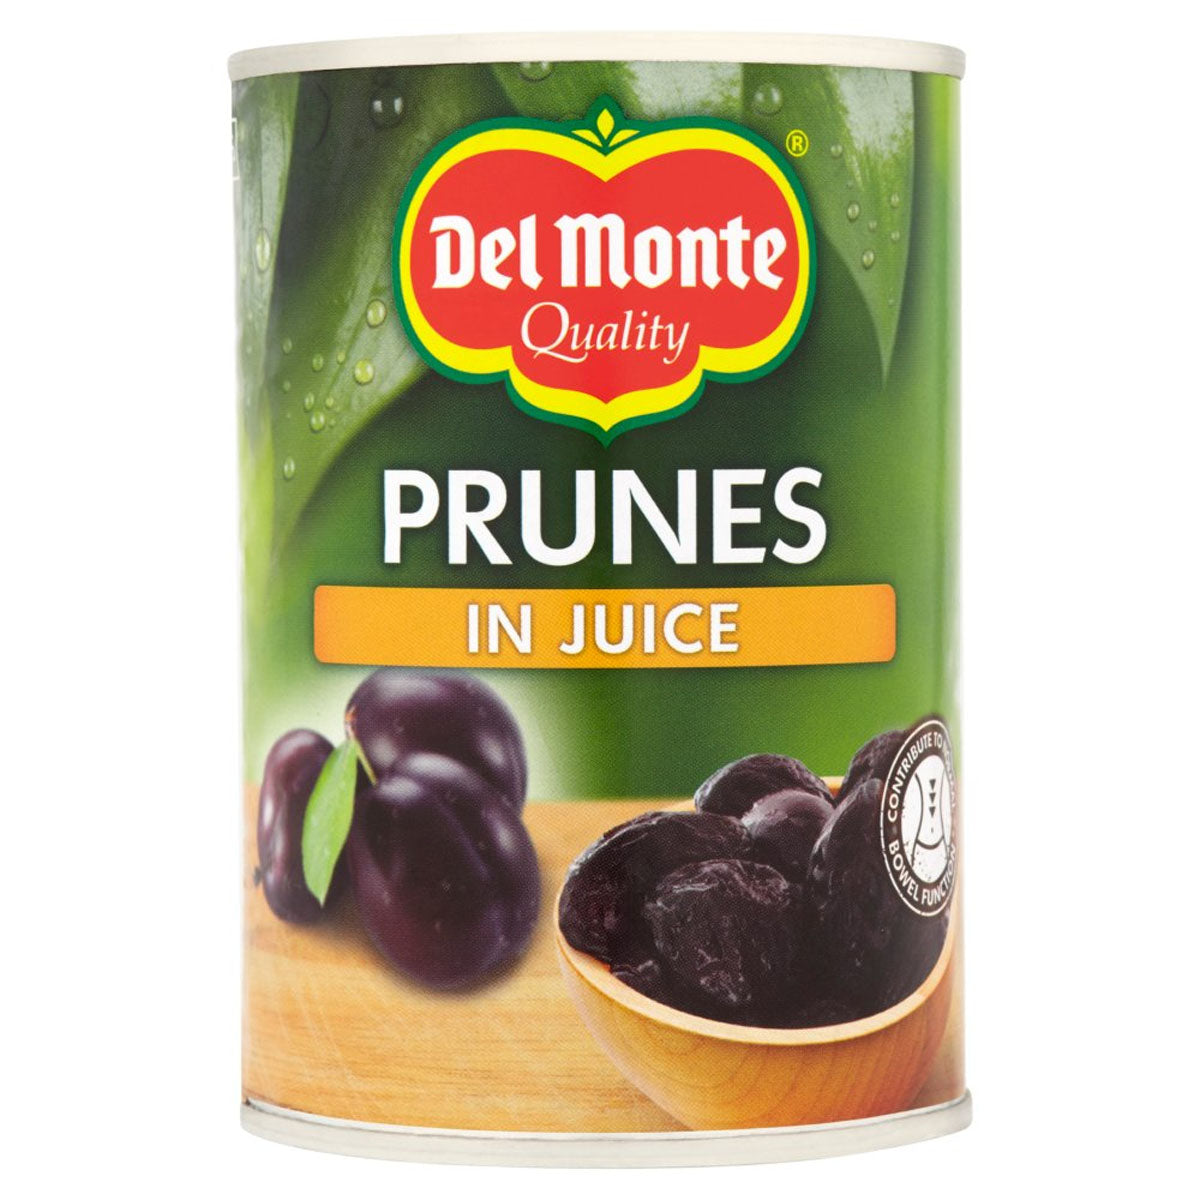 Del monte prunes in juice - 410g.